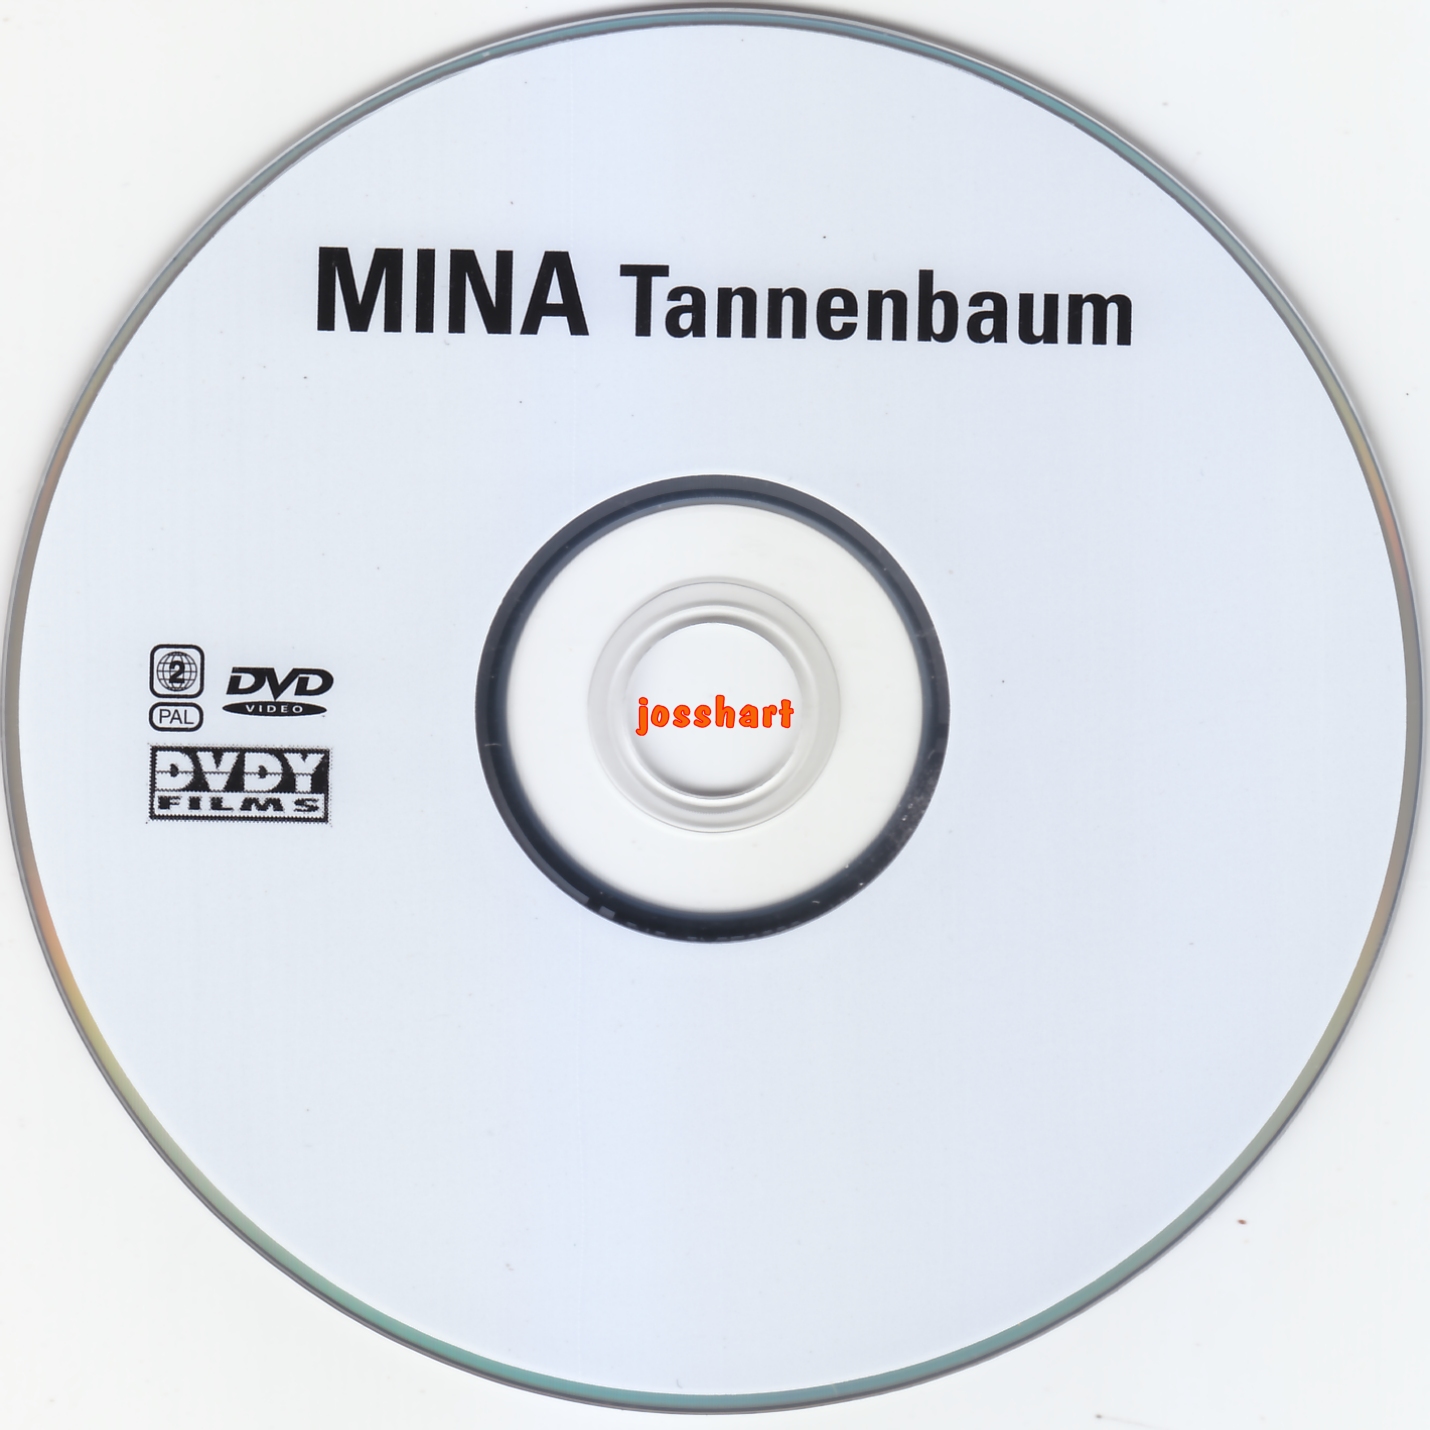 Mina Tannenbaum